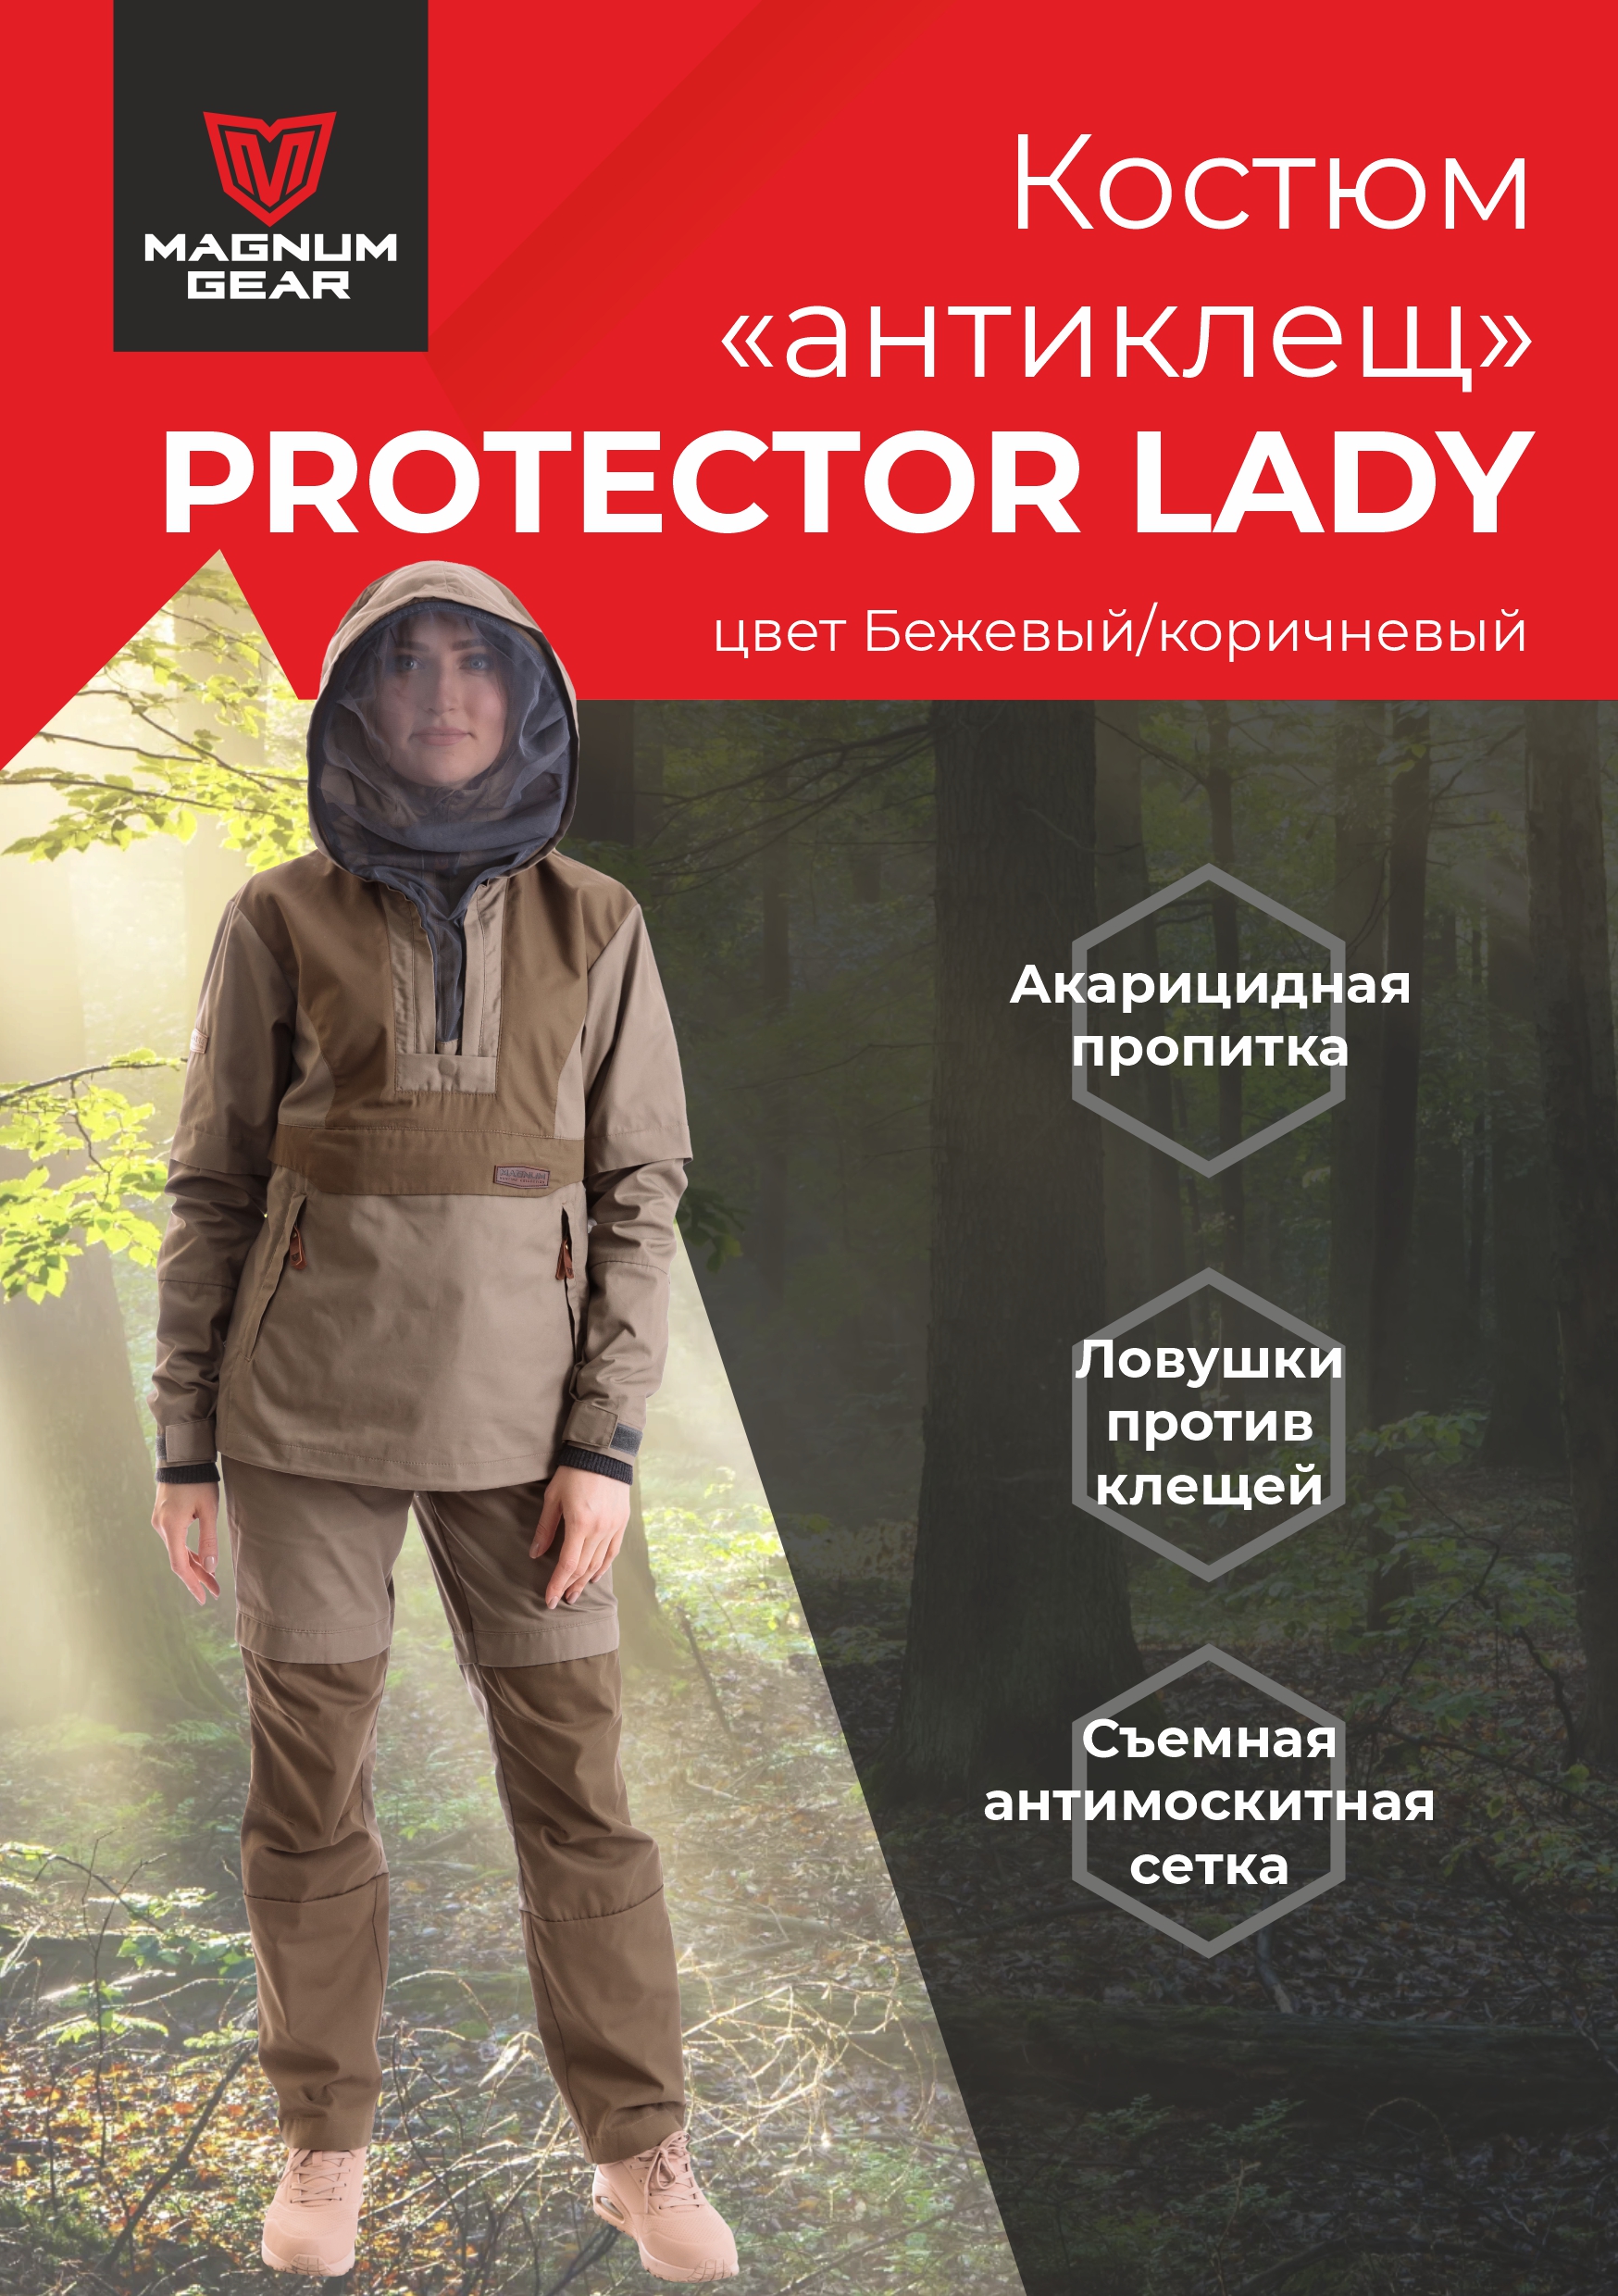 Костюм женский Magnum Gear, PROTECTOR LADY, бежевый/коричневый, размер L, рост 158-164